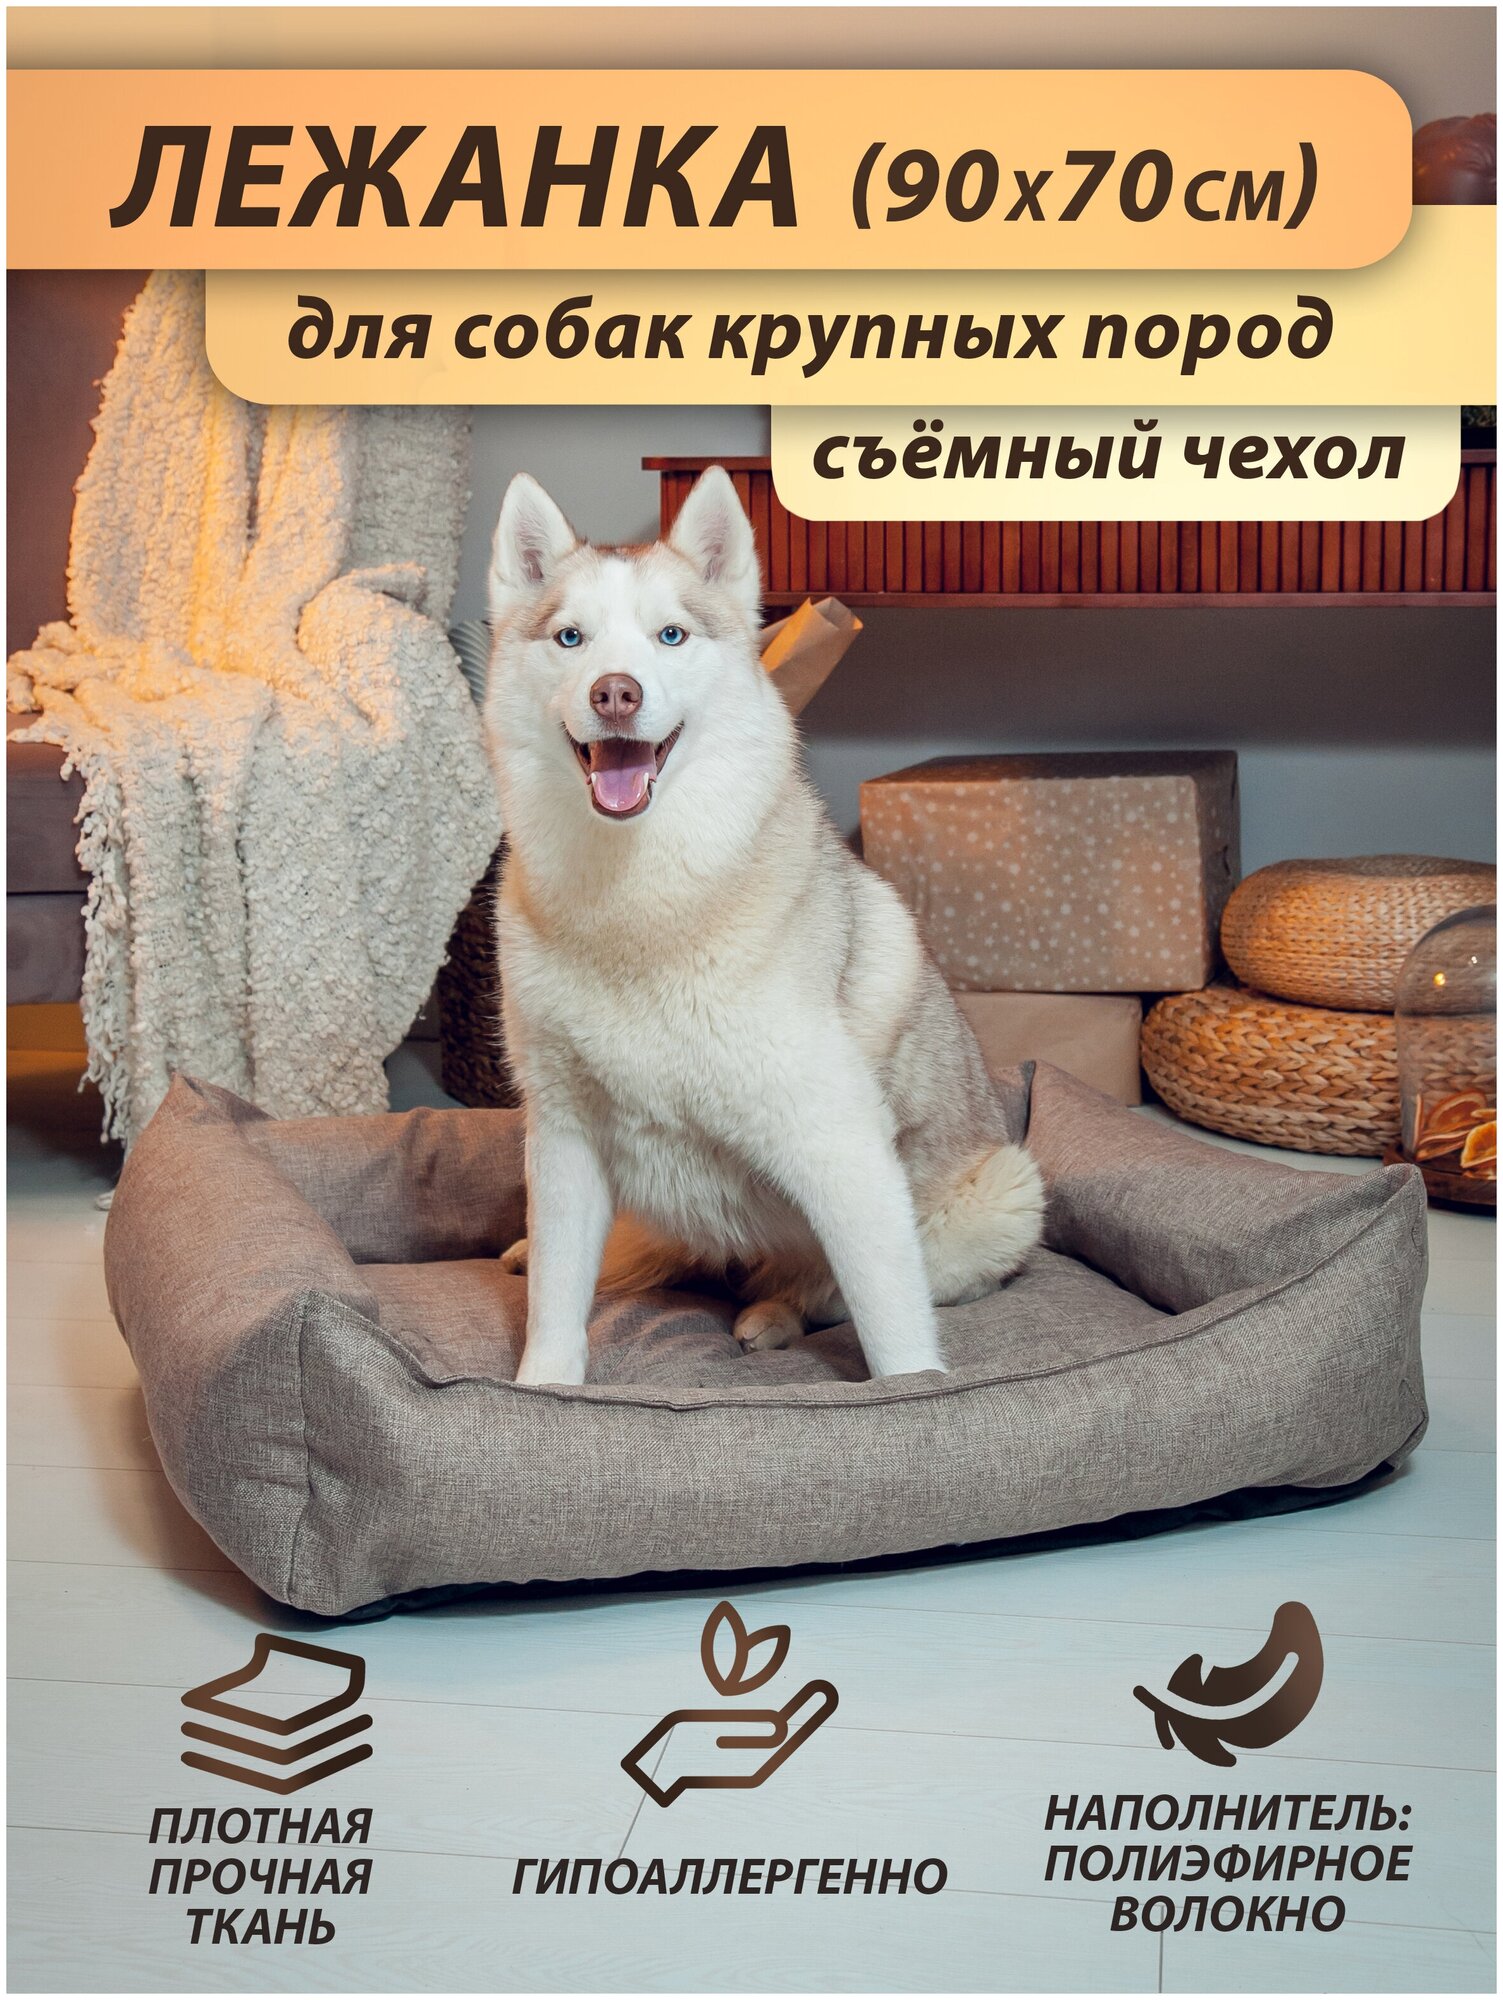 Лежанка для собаки, для крупных и средних пород, со съёмным чехлом 90x70 см